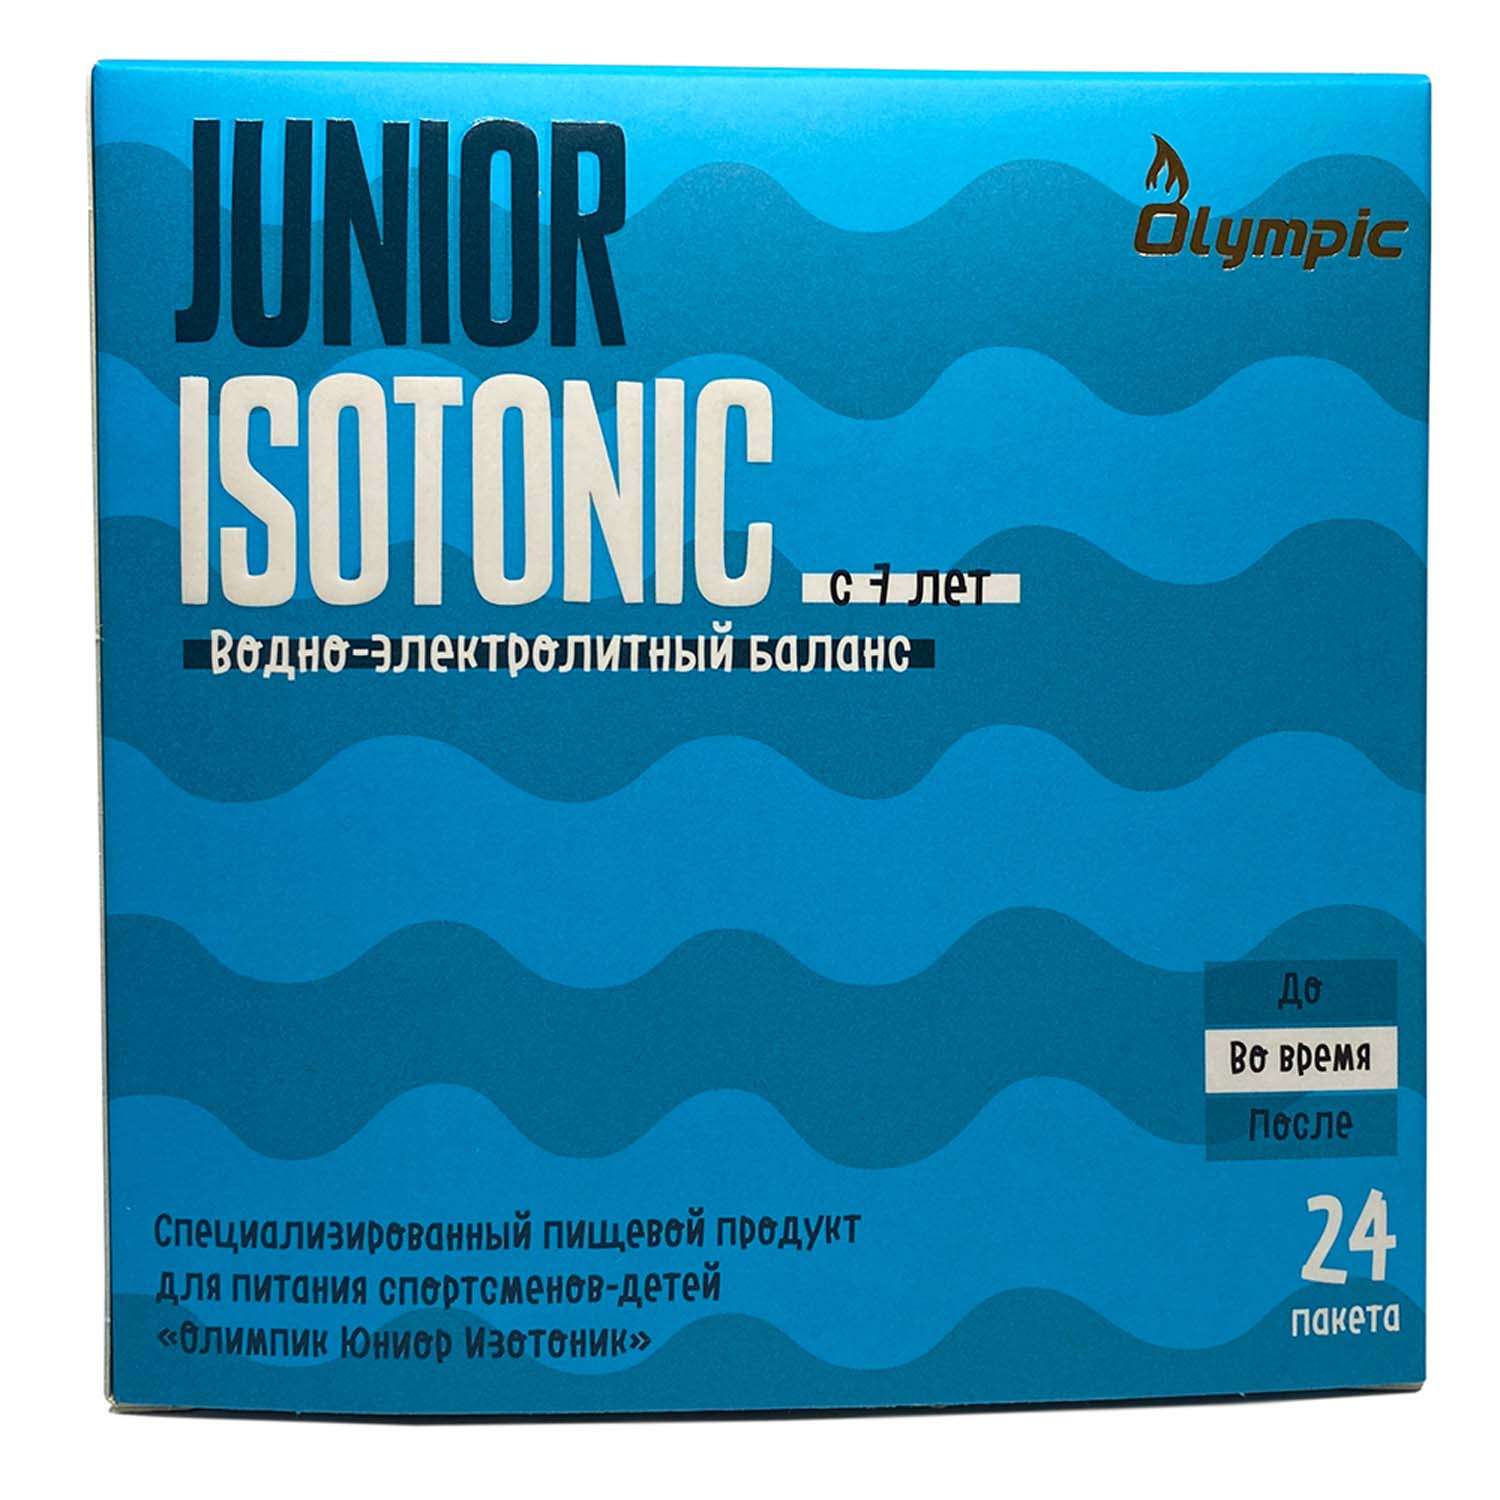 Изотоник Olympic Junior Isotonic 9.7г*24пакетика - фото 1